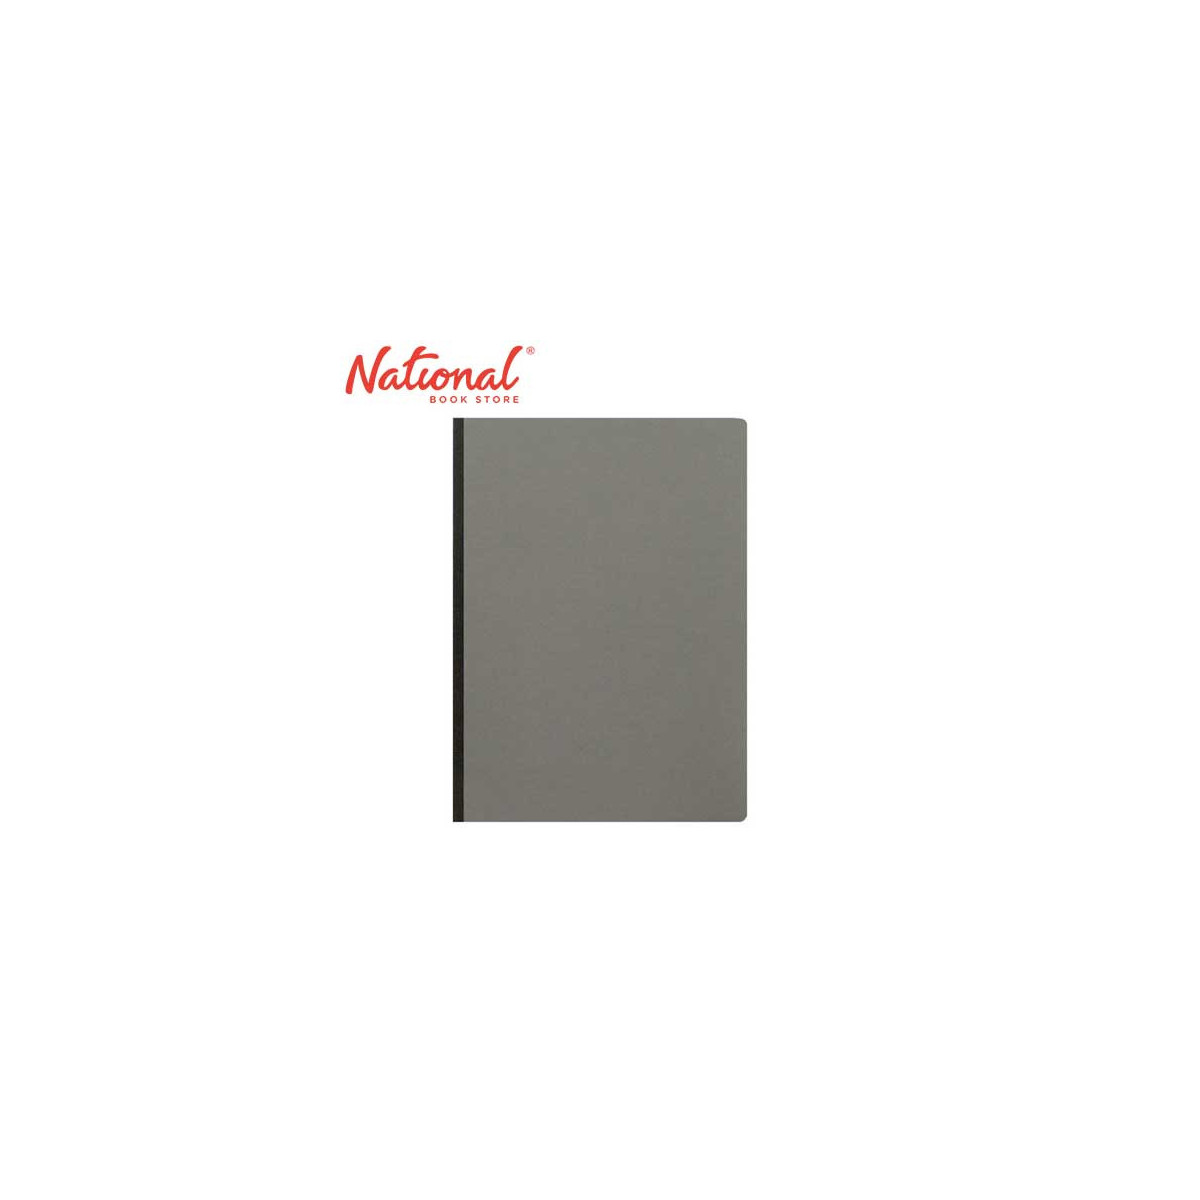 Folder Pressboard PeBoard Bookle Gray Short 2Fold Eco Friendly - Office Supplies - Filing